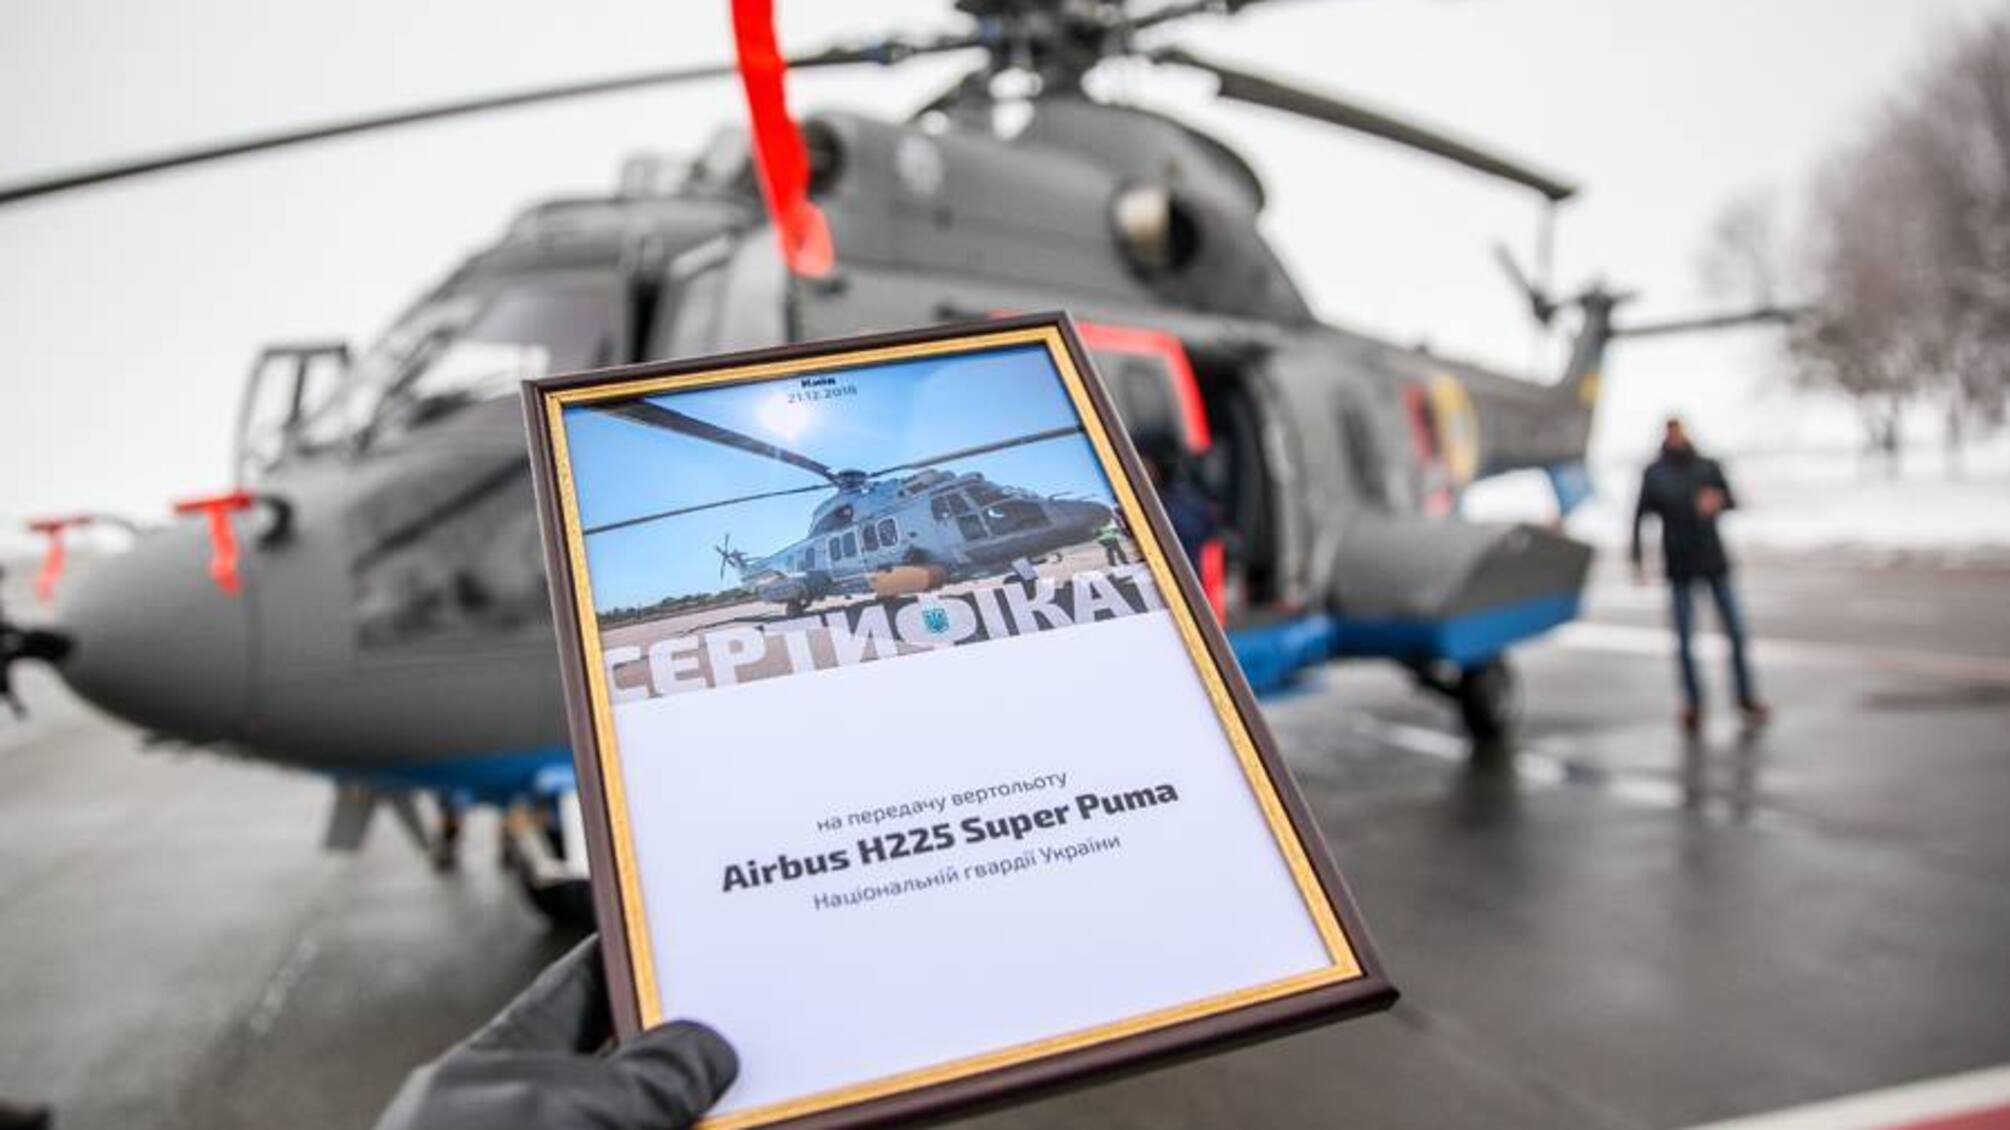 Вертолет H225 Super Puma, на котором разбился Монастырский: характеристики и особенности